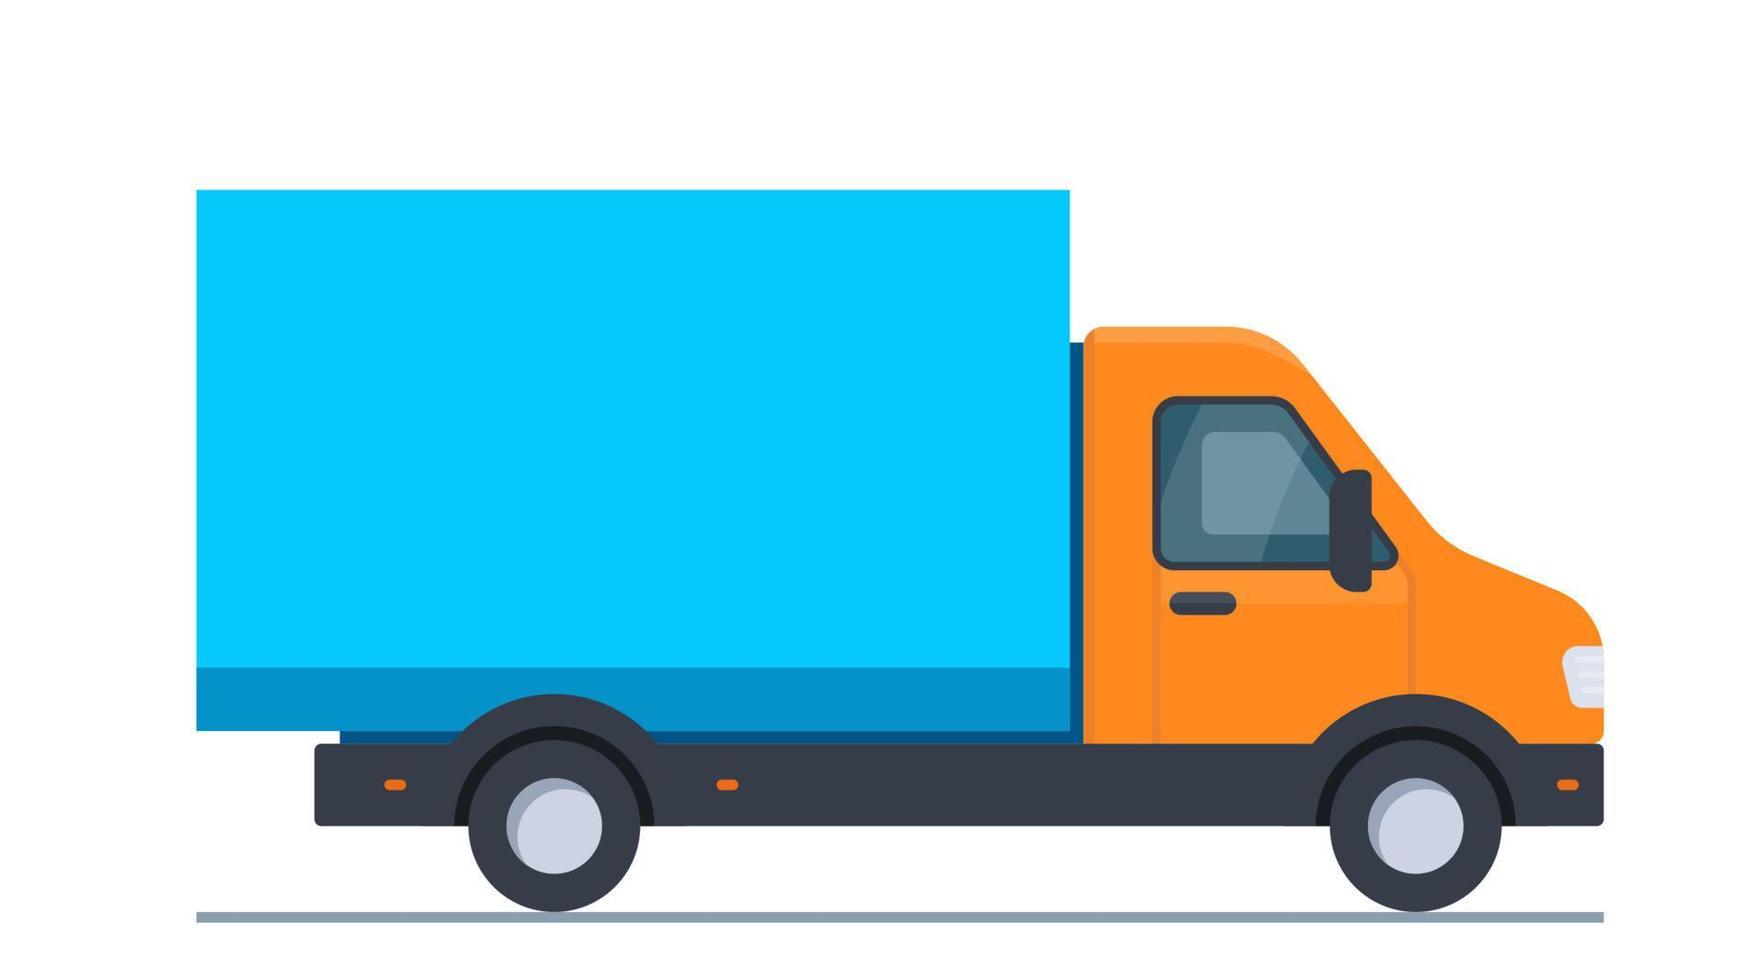 camión para el transporte de mercancías y materiales de construcción, gran volumen y peso, entrega al realizar el pedido de mercancías. camión de carga. ilustración vectorial aislado sobre fondo blanco. vector